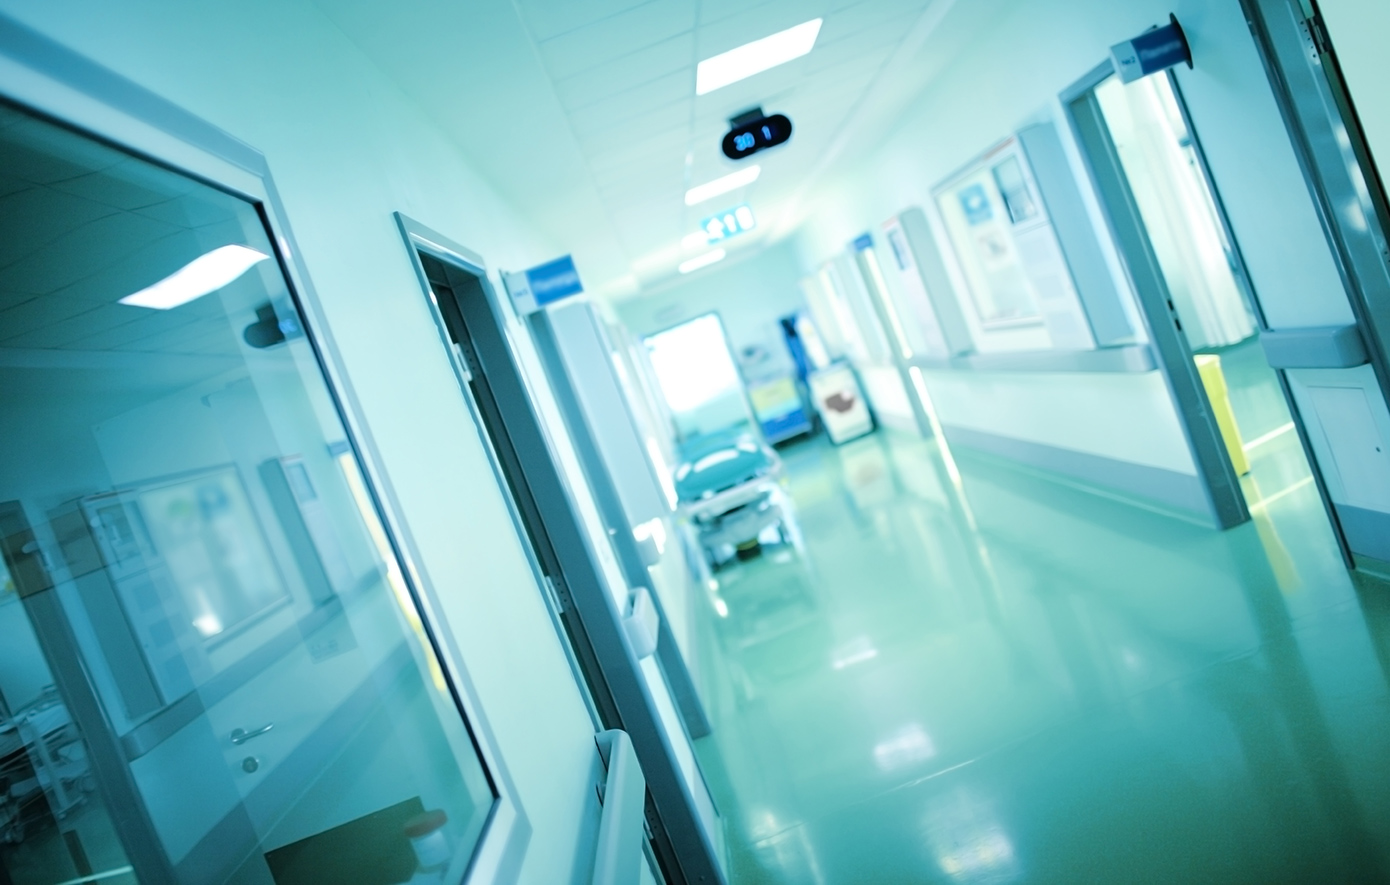 Κρούσμα μηνιγγίτιδας στην Αμαλιάδα – 42χρονη μεταφέρθηκε σε νοσοκομείο της Πάτρας